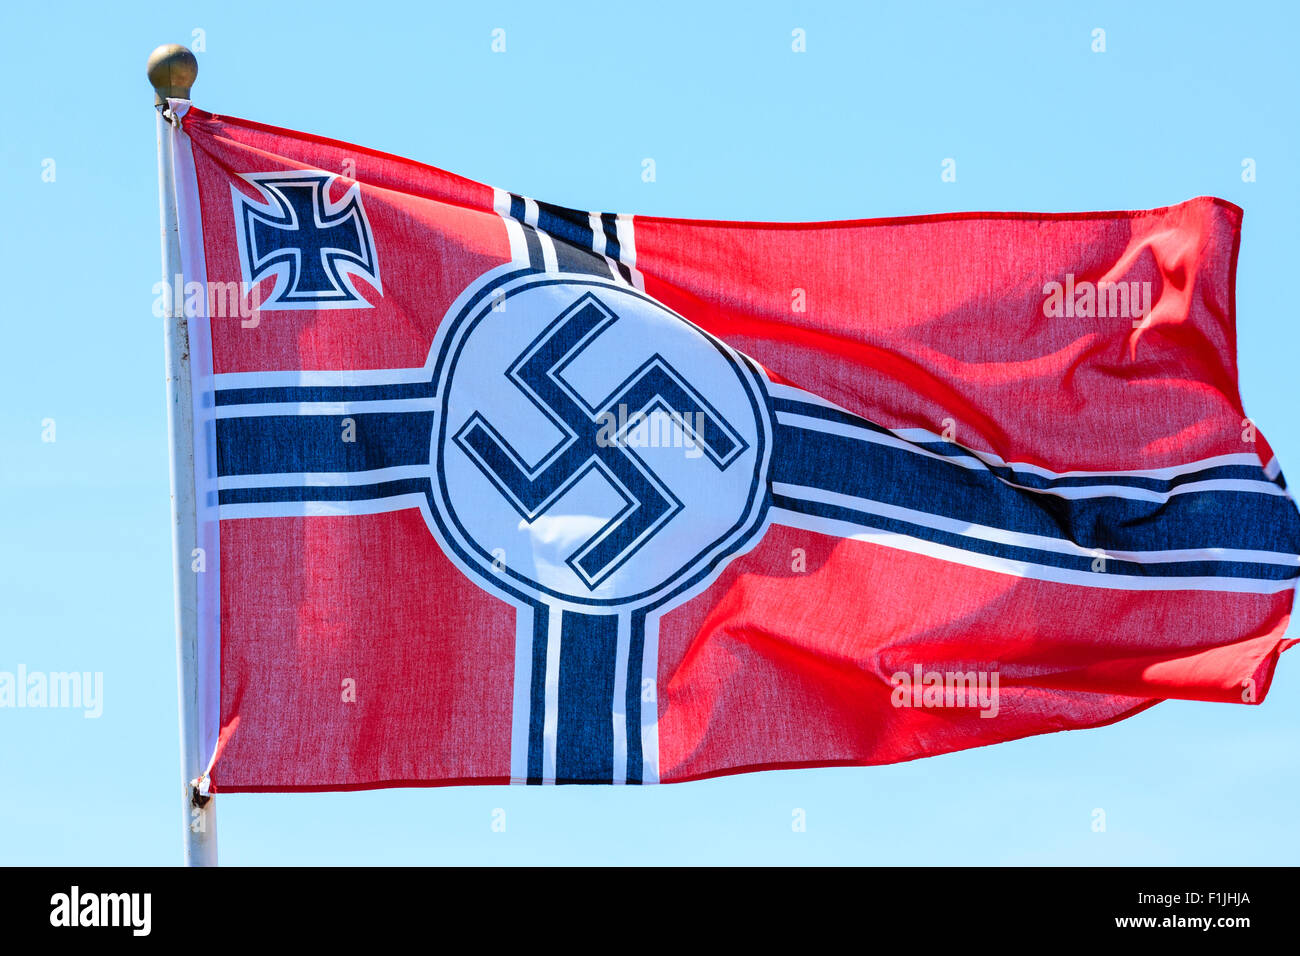 Seconda guerra mondiale esercito tedesco bandiera che fluttua nel vento con cielo blu chiaro dello sfondo. Croce tedesca con la svastica nazista in centro e angolo croce di ferro. Foto Stock